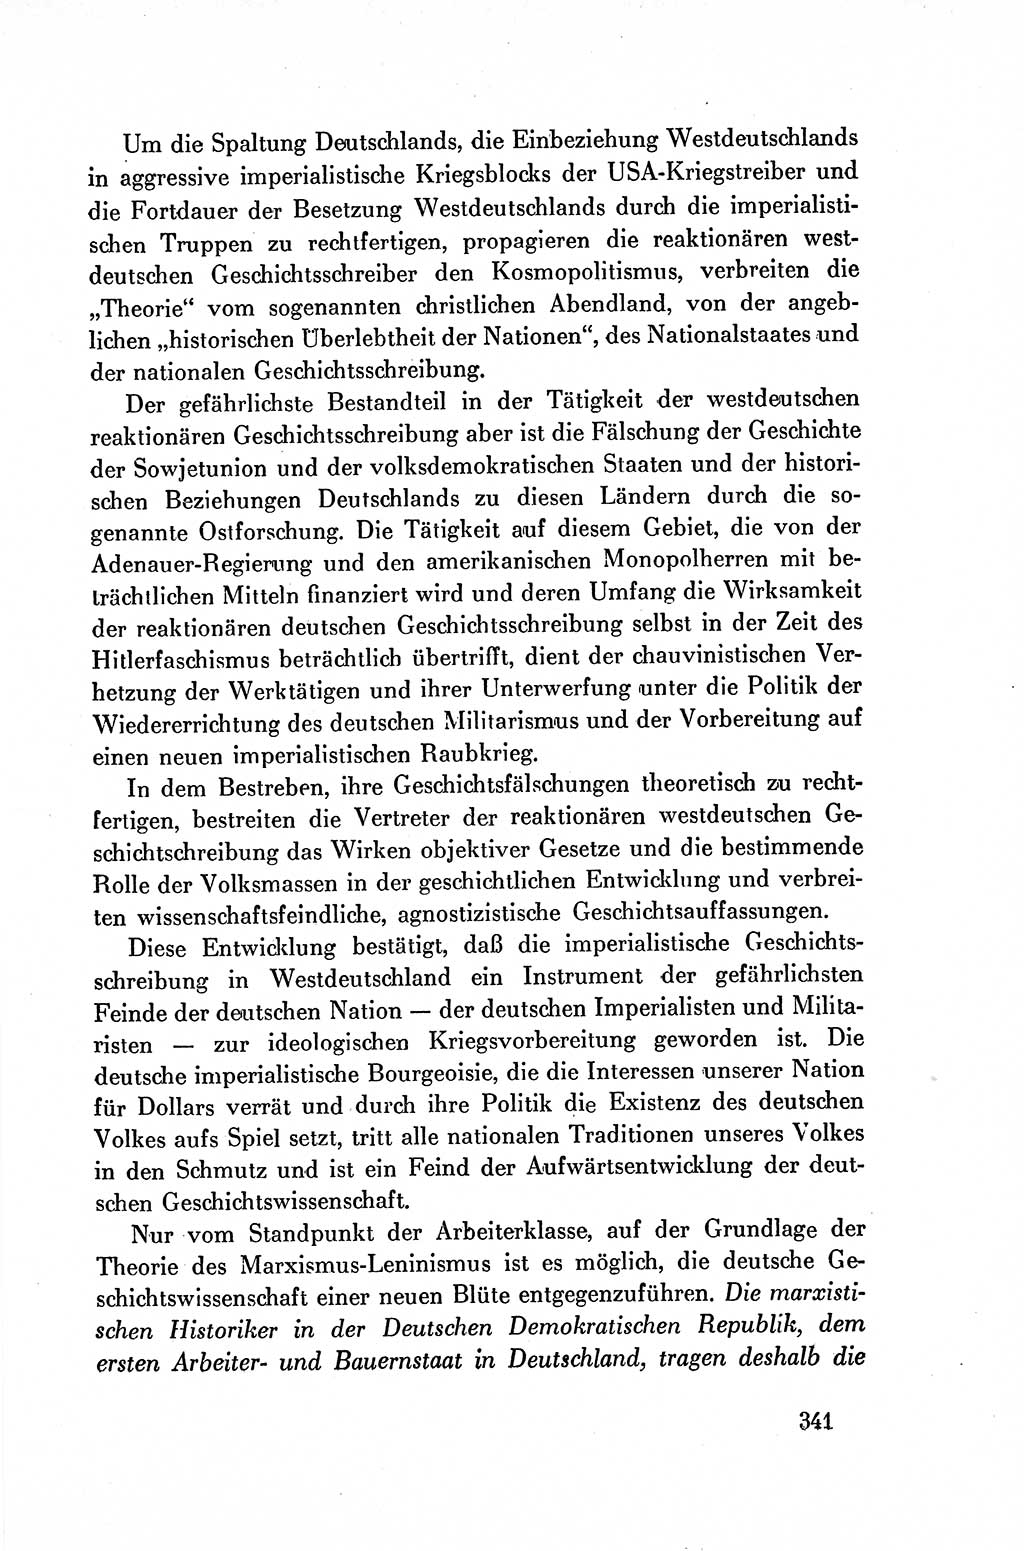 Dokumente der Sozialistischen Einheitspartei Deutschlands (SED) [Deutsche Demokratische Republik (DDR)] 1954-1955, Seite 341 (Dok. SED DDR 1954-1955, S. 341)